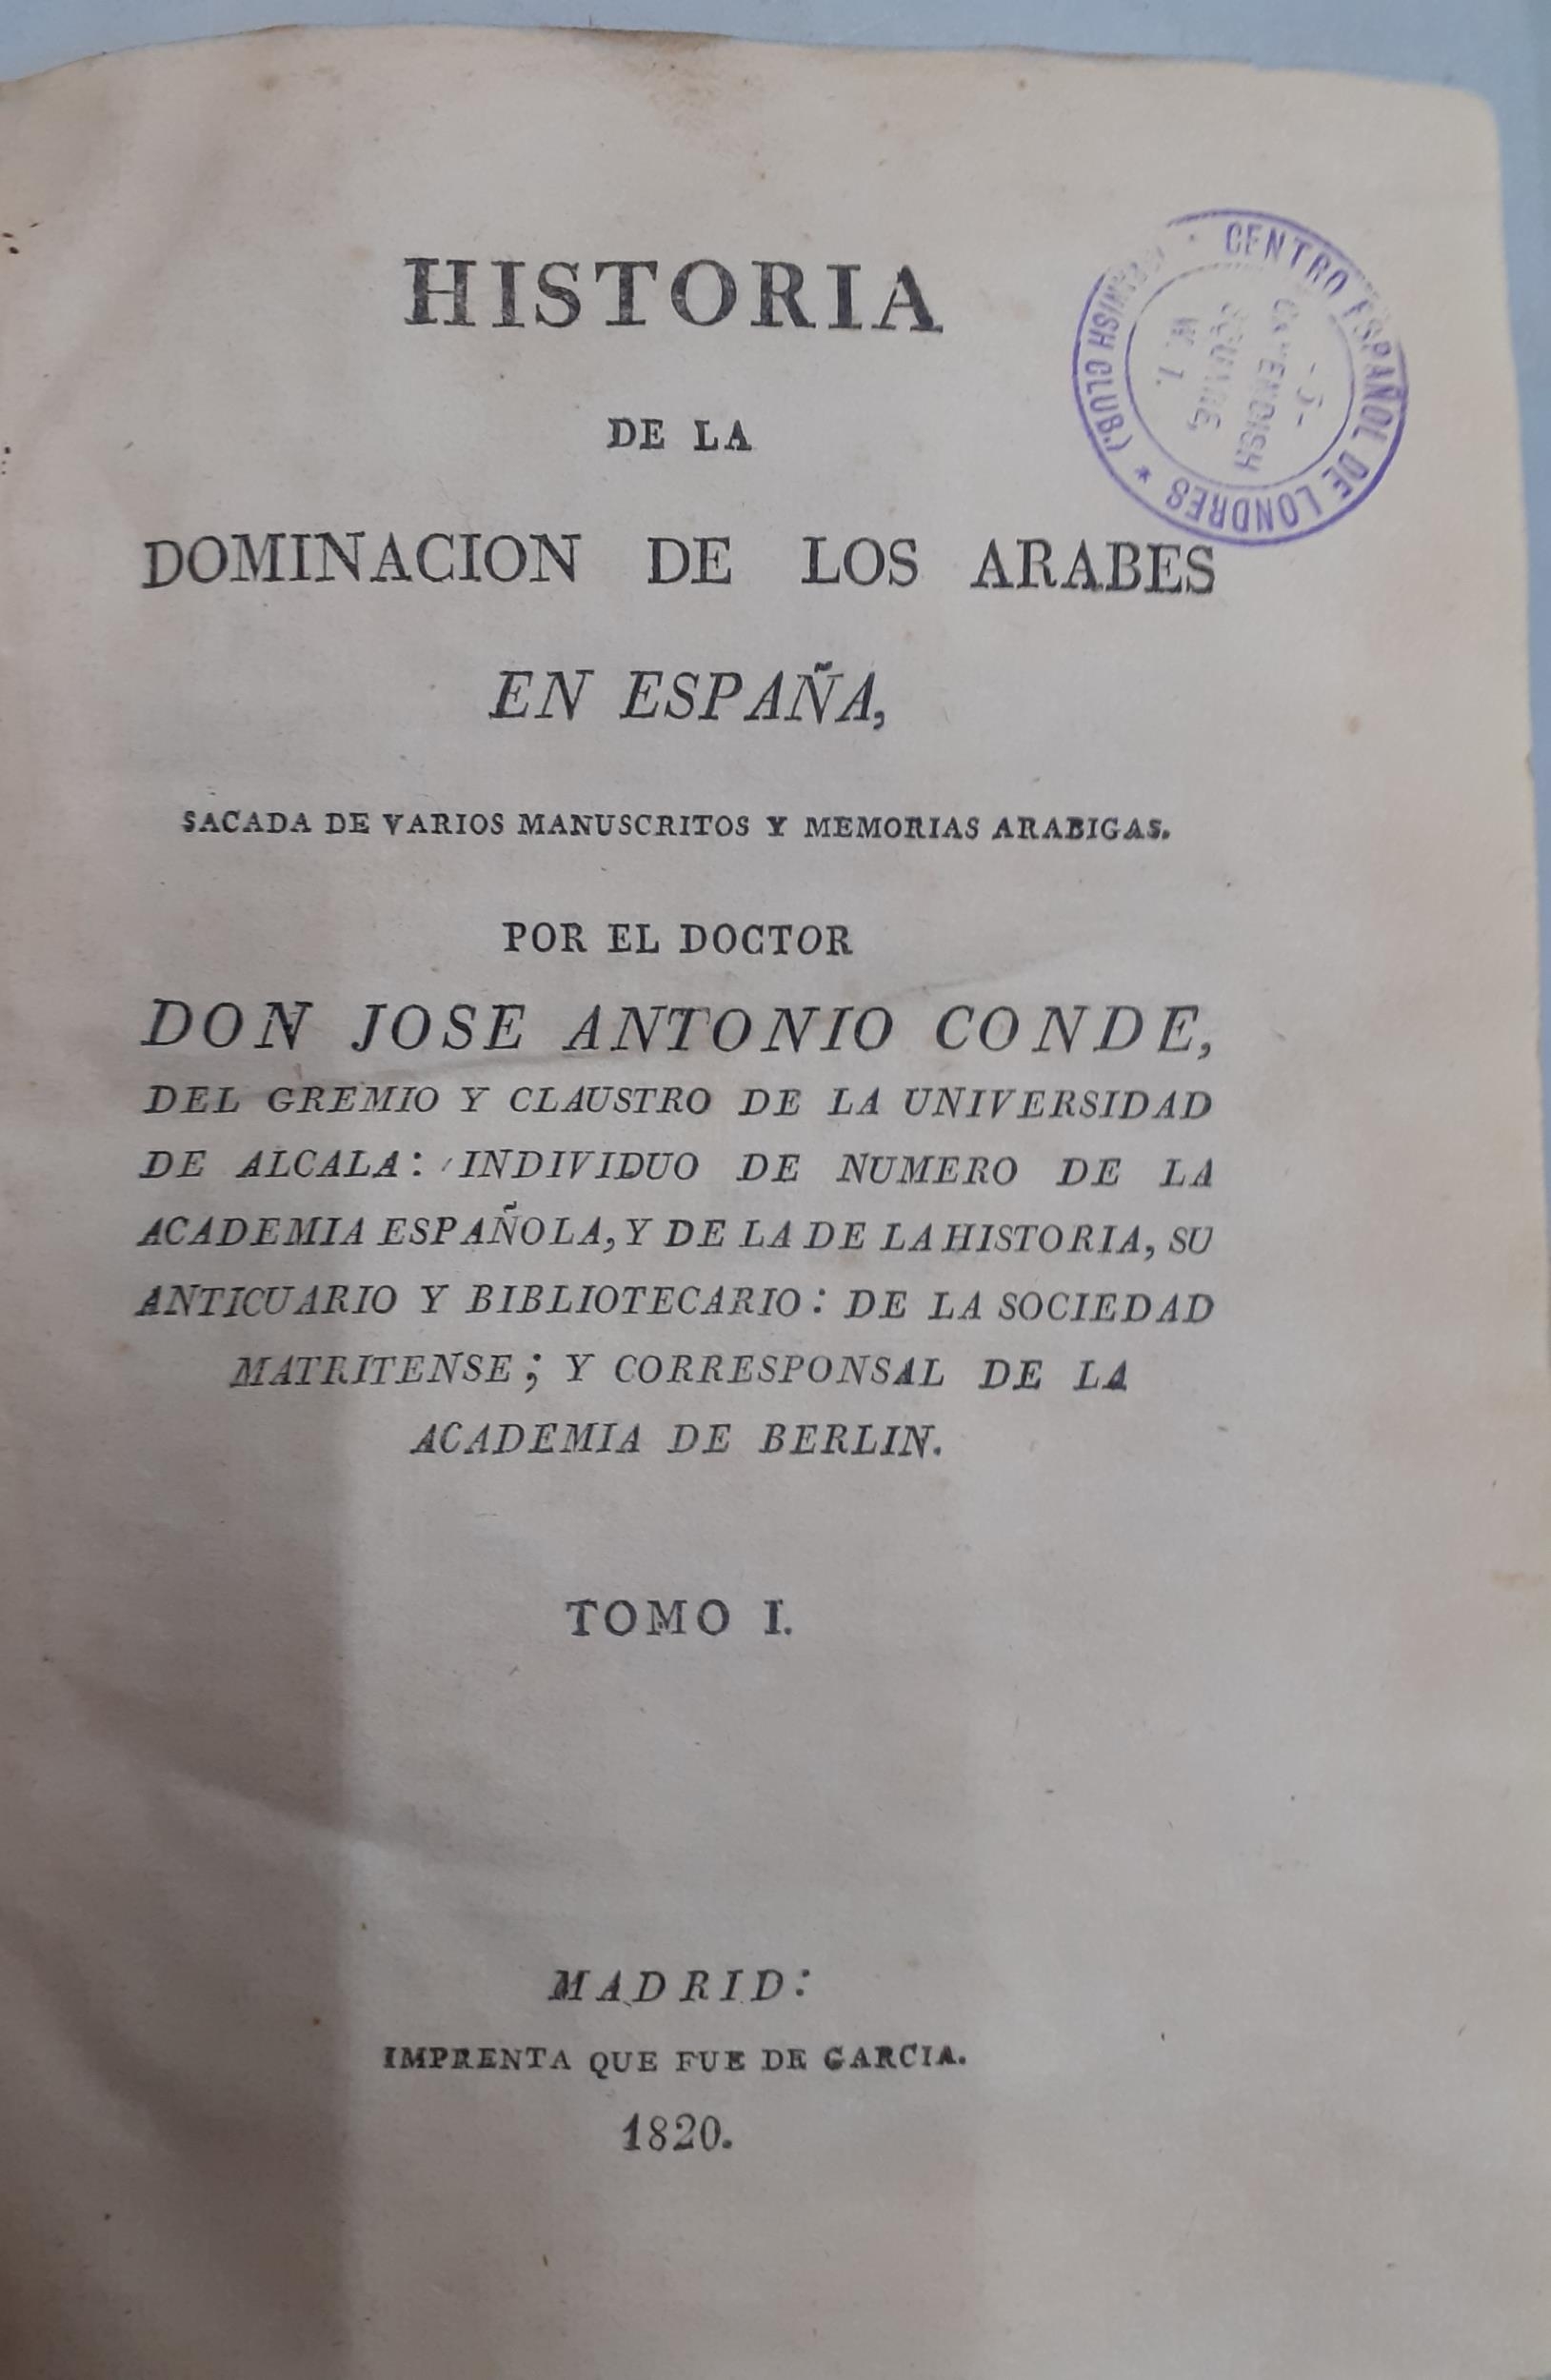 Books - 3 volumes of 1820 'Historia de la Dominaclon de lo Arabes' in Spanish for the doctor Don - Image 5 of 7